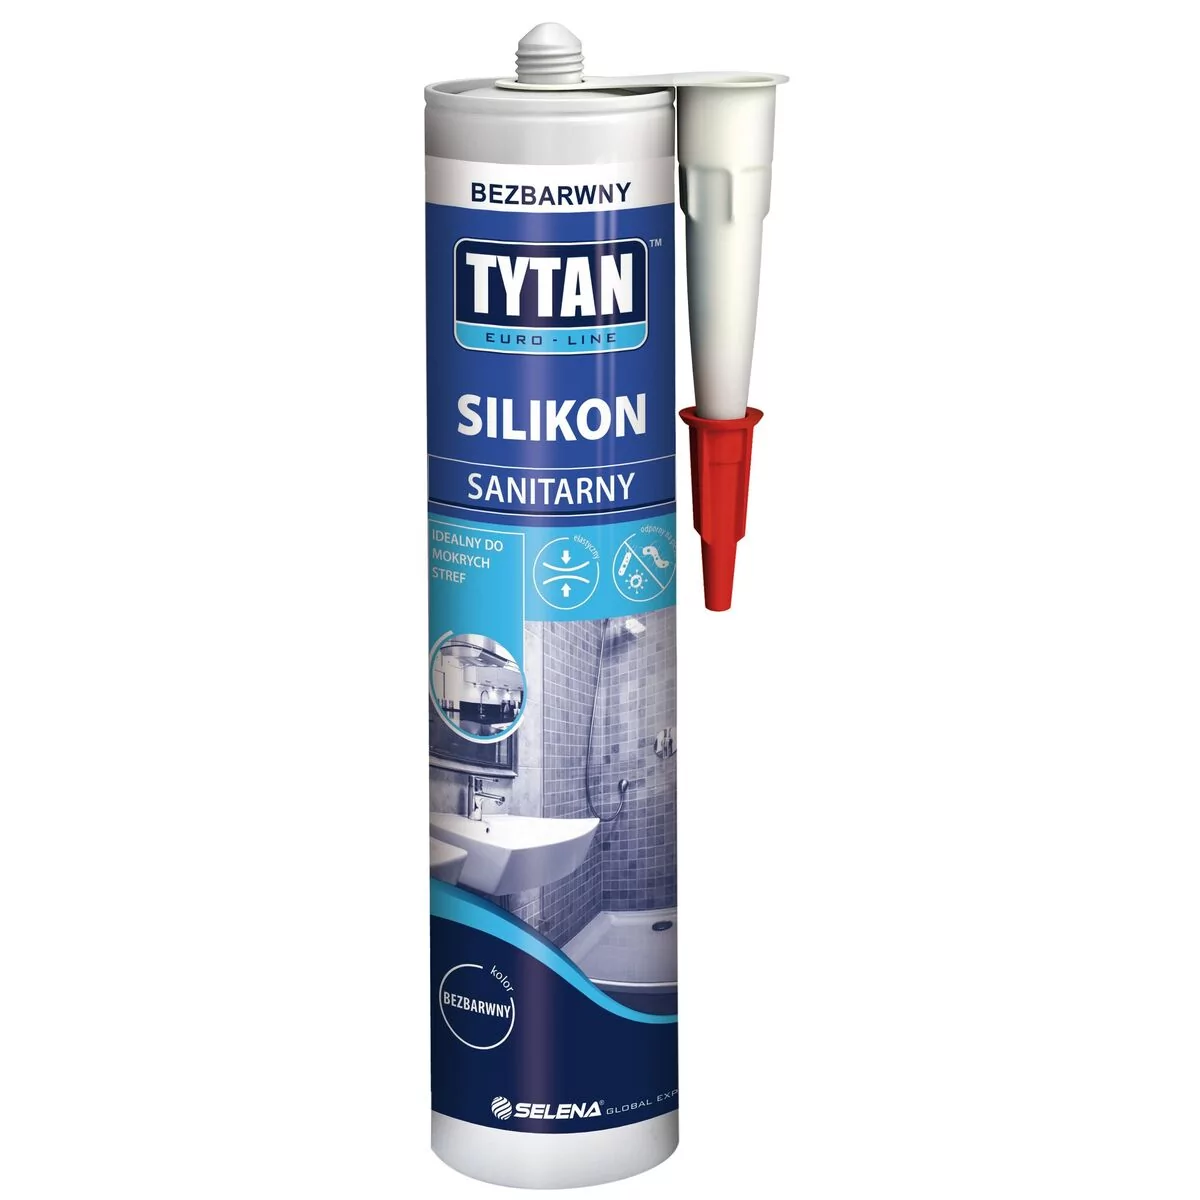 Silikon sanitarny Euroline bezbarwny 280 ml Tytan